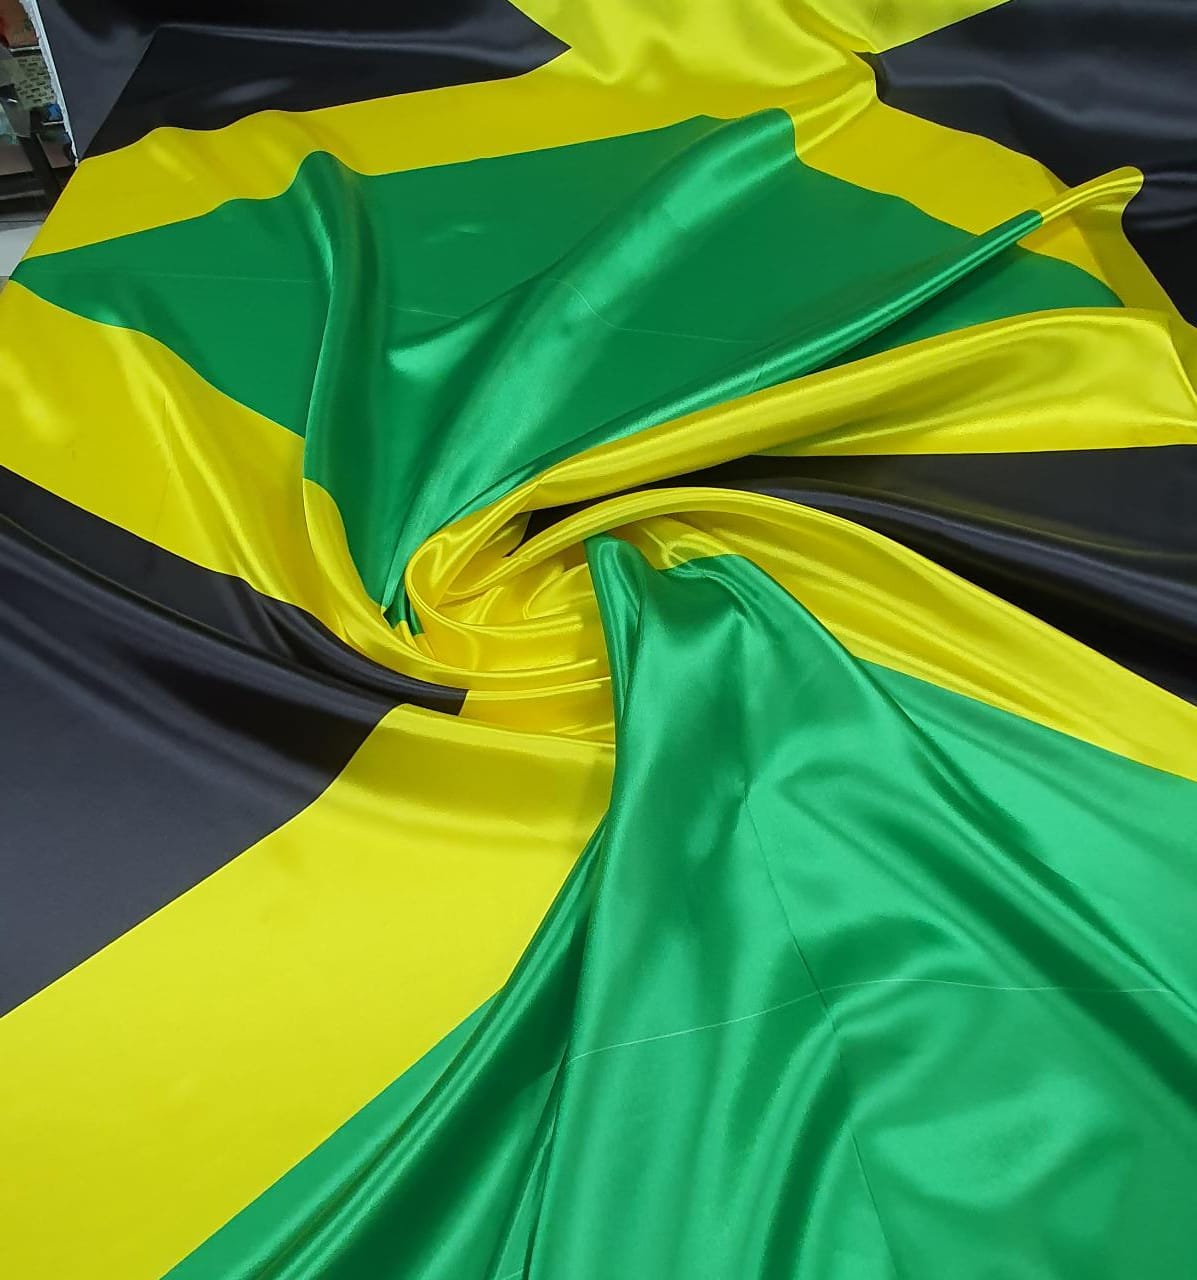 Cetim Bandeira da Jamaica